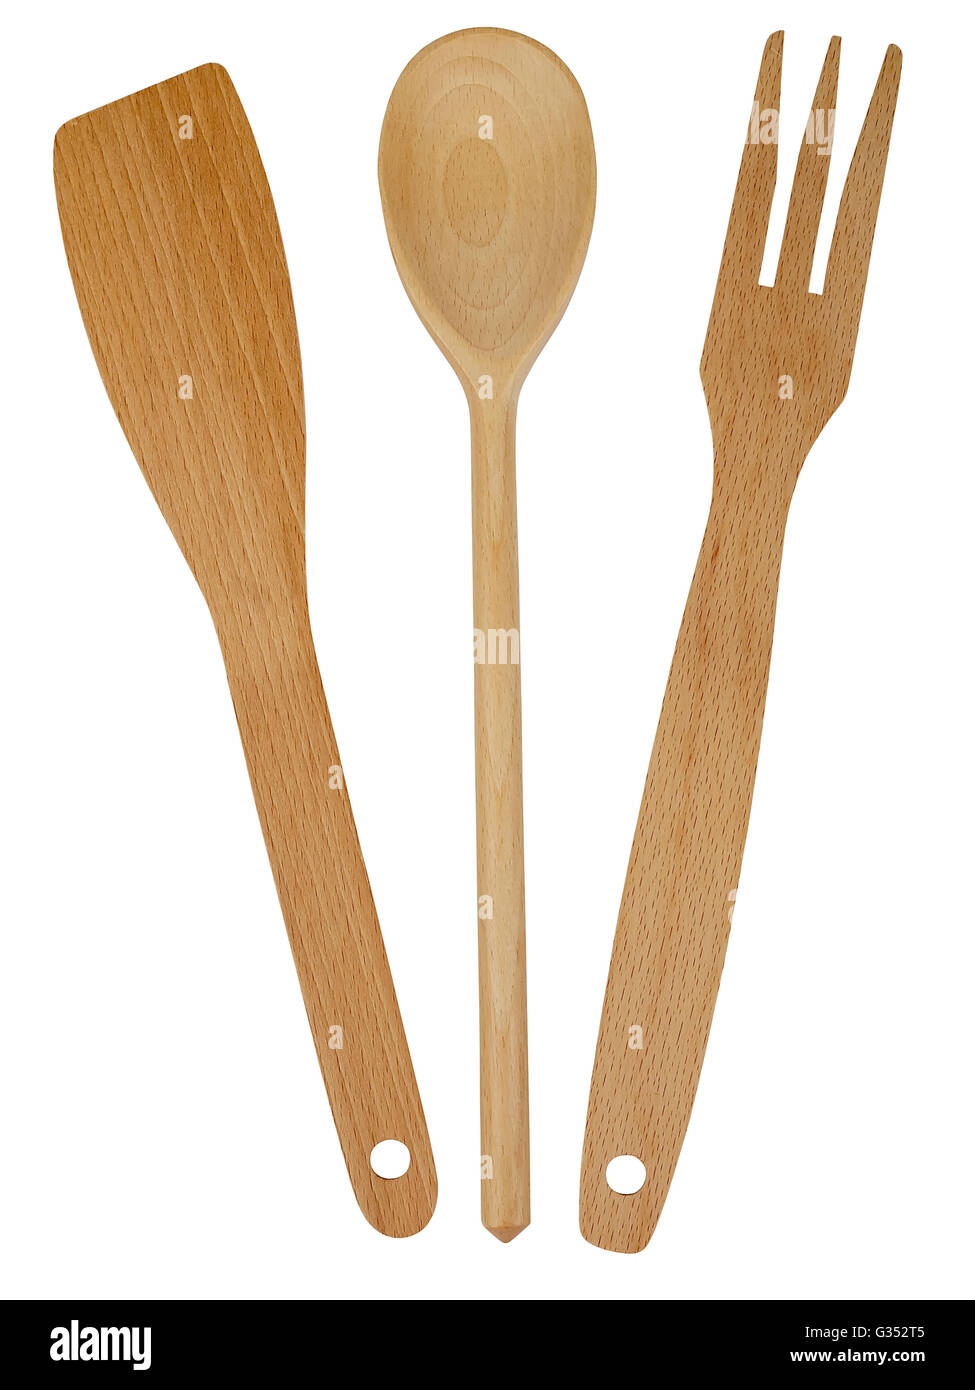 Cucina in legno utensile isolato su sfondo bianco, studio shot Foto Stock